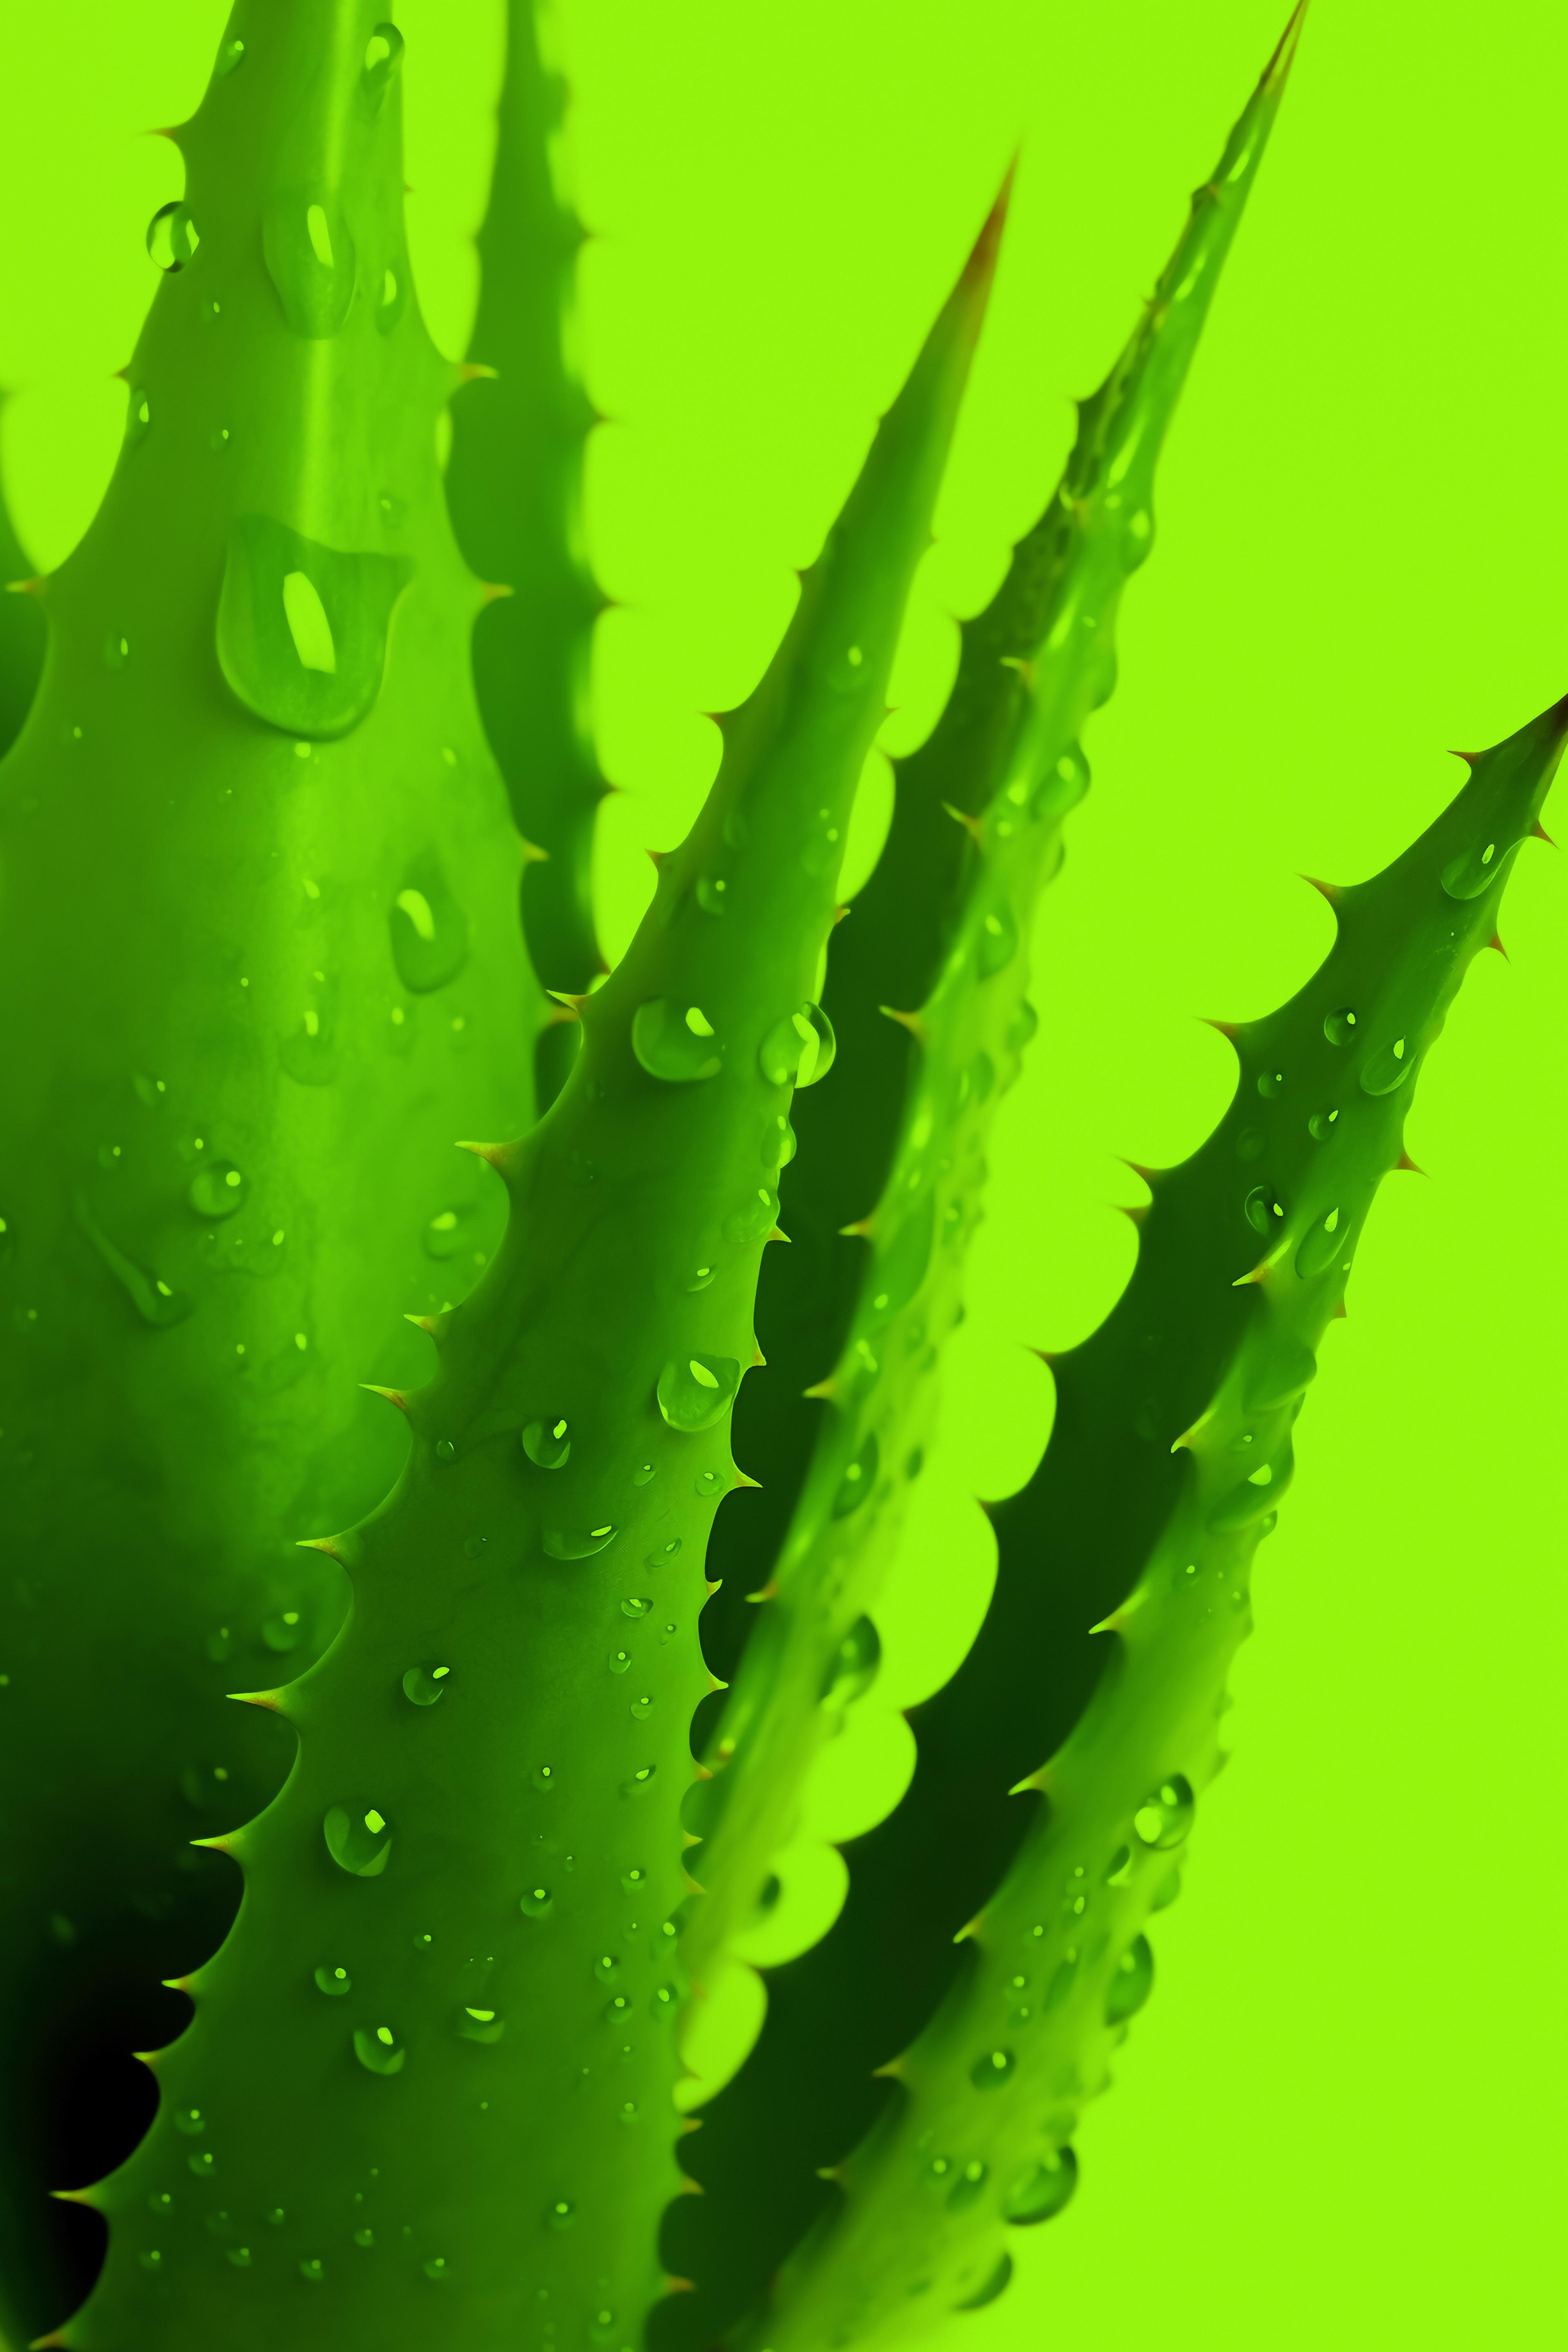 Aloes - wielofunkcyjna roślina. Jakie ma właściwości zdrowotne? Lecznicze właściwości aloesu – co warto wiedzieć? Aloes – zastosowanie, działanie, właściwości